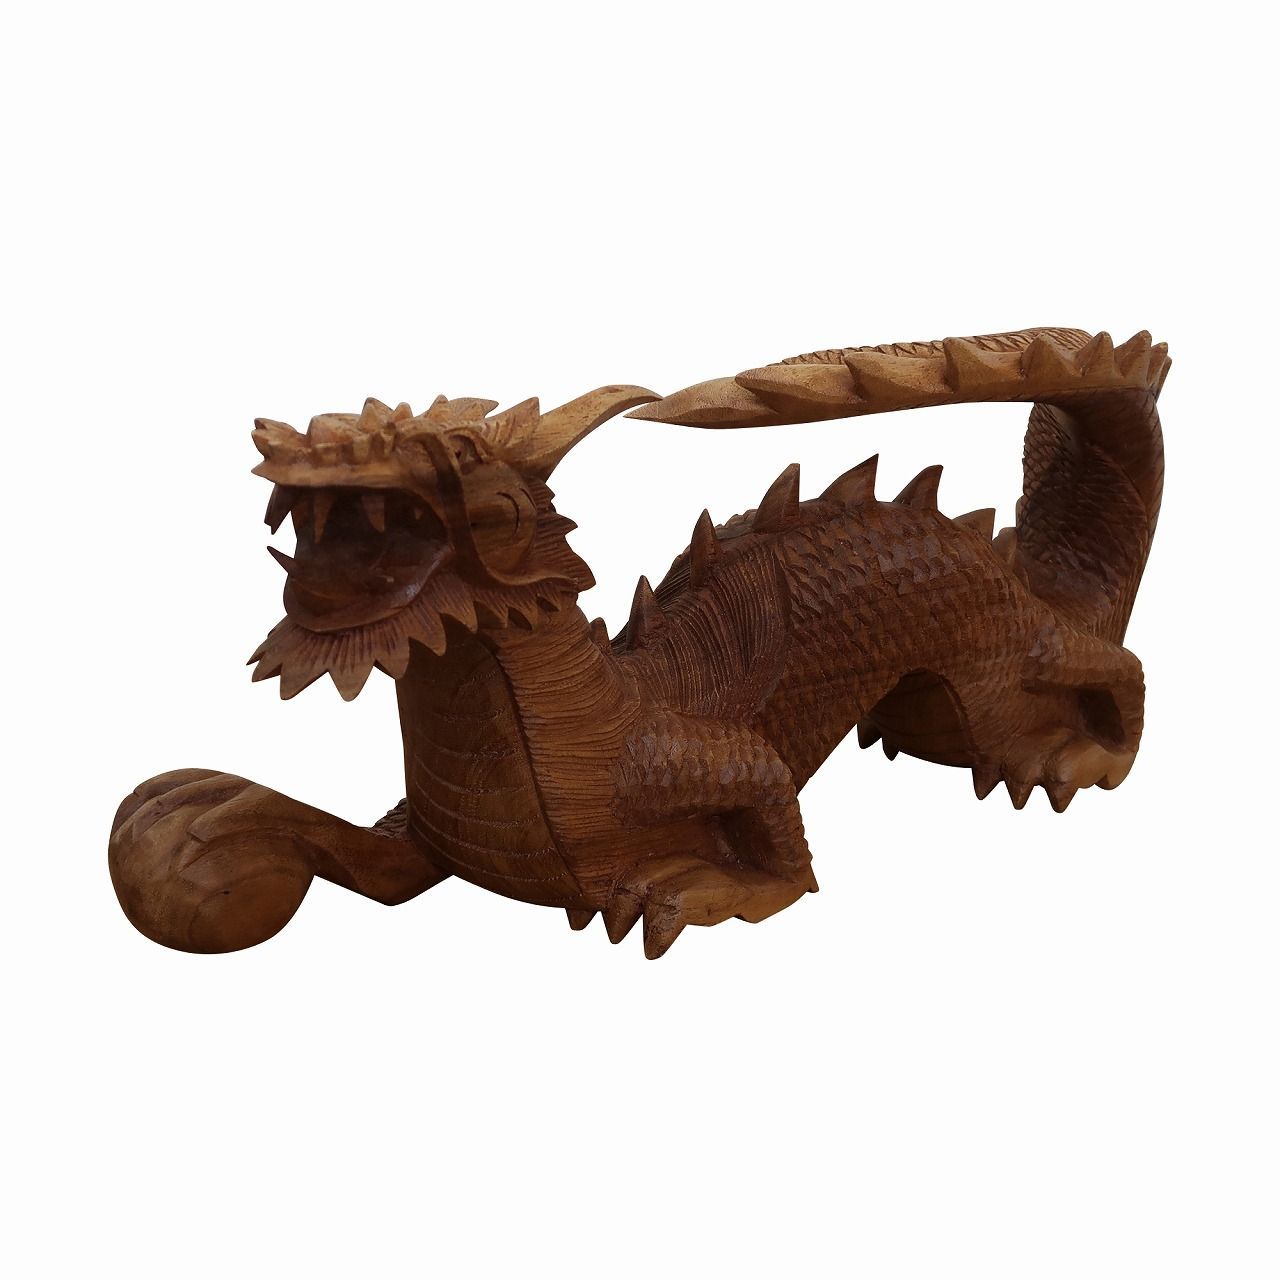 ドラゴンの木彫り 龍の木彫り スワール無垢材 左向き 50cm 竜の木彫り 